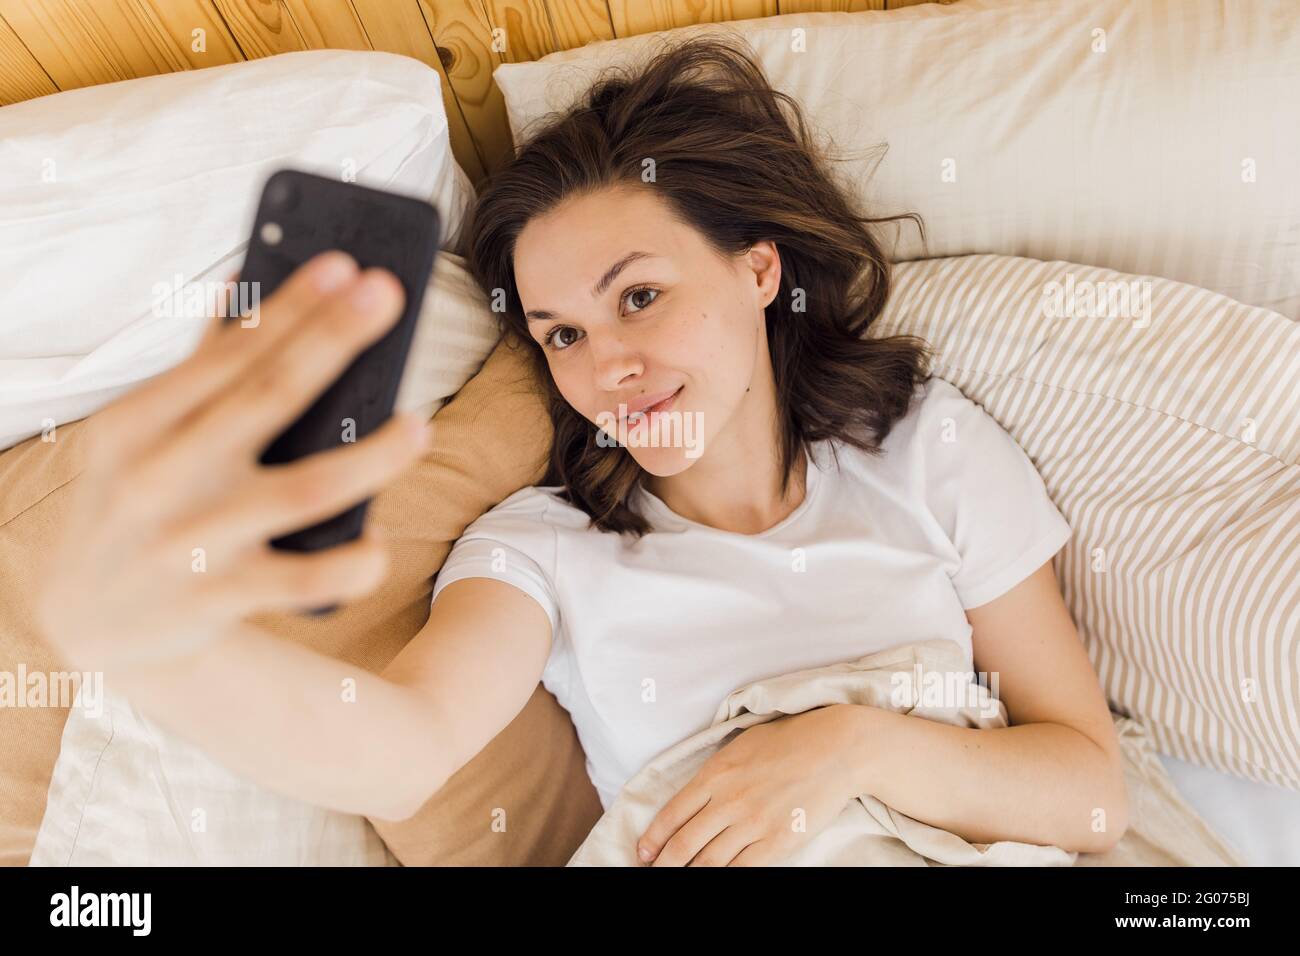 Junge attraktive Frau nimmt ein Selfie kurz nach dem Aufwachen Stockfoto